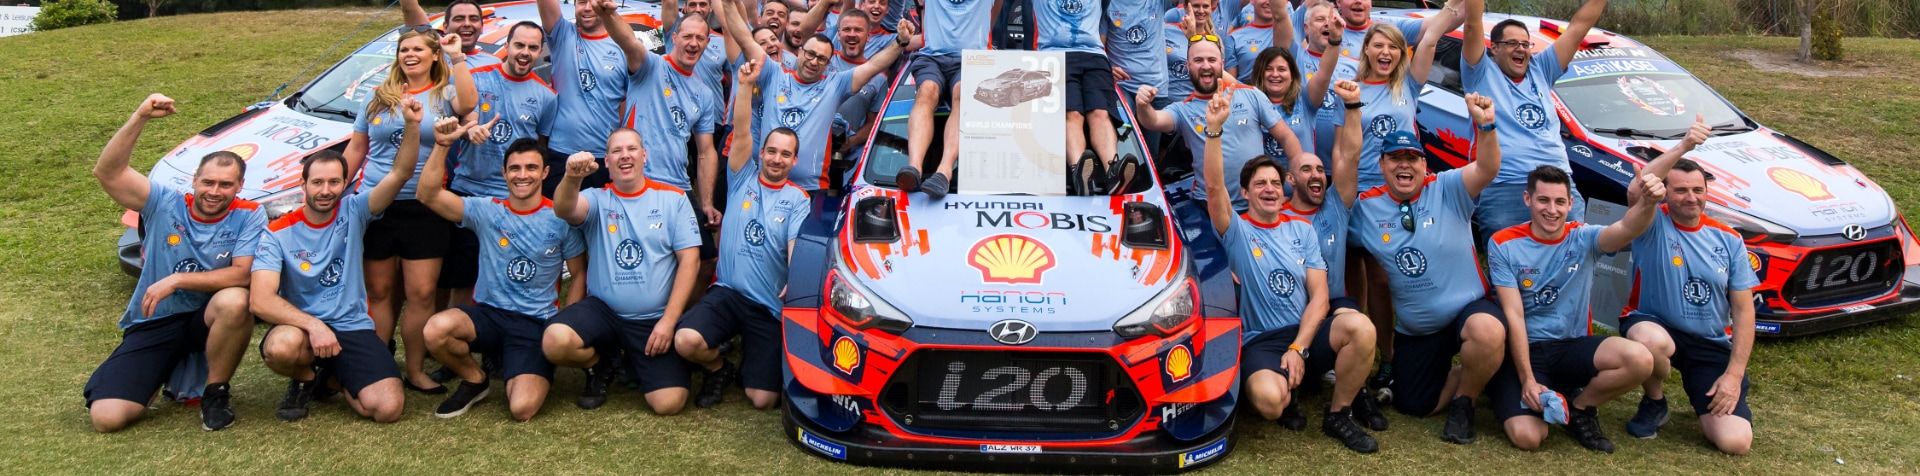 i20 WRC 차량 3대 앞에서 축하하는 현대 모터스포츠 팀.